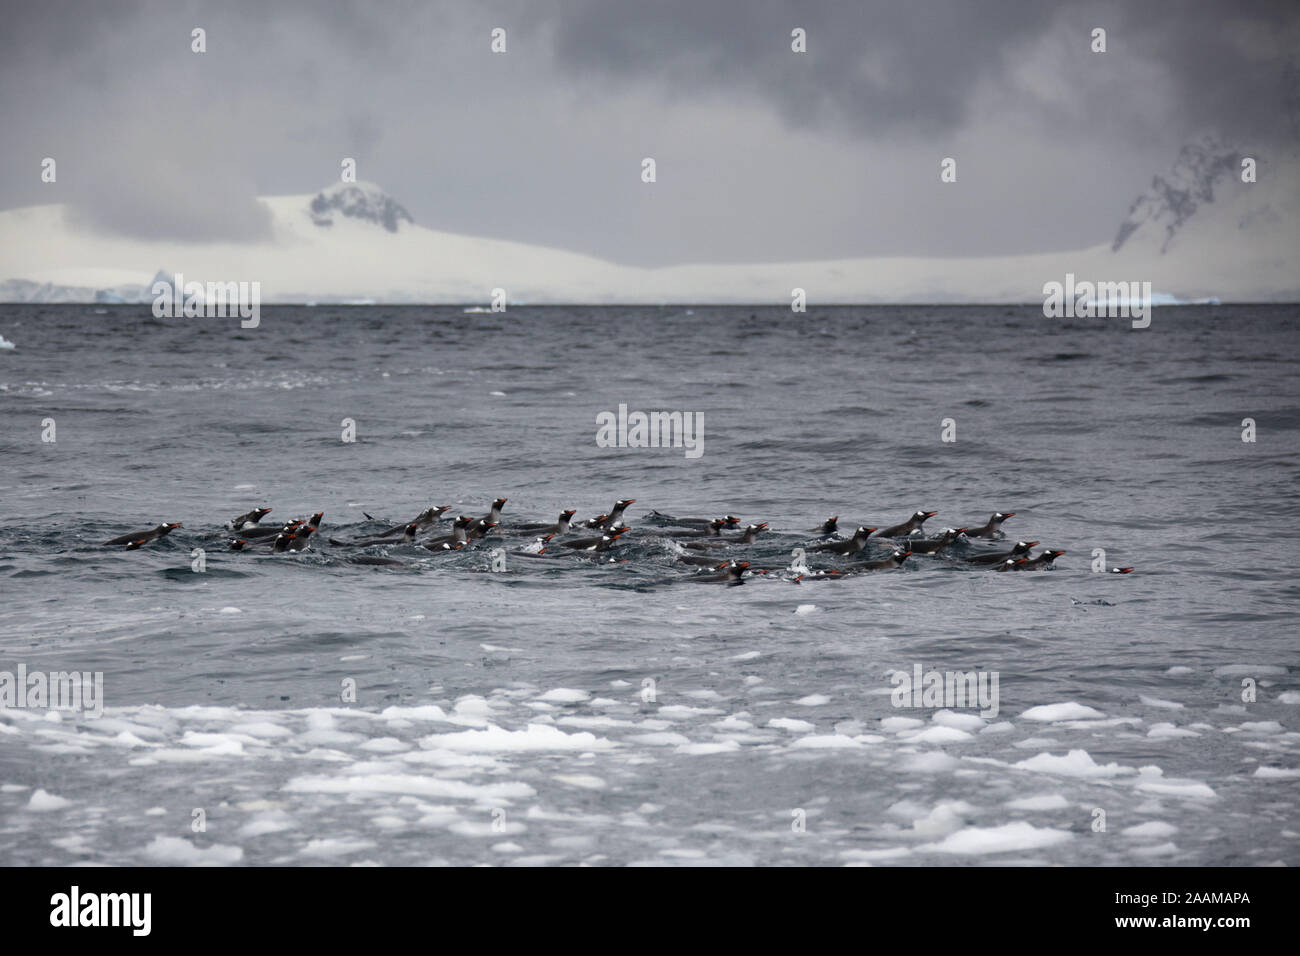 Eselspinguine schwimmend im Sued Ozean Antarktis Stock Photo